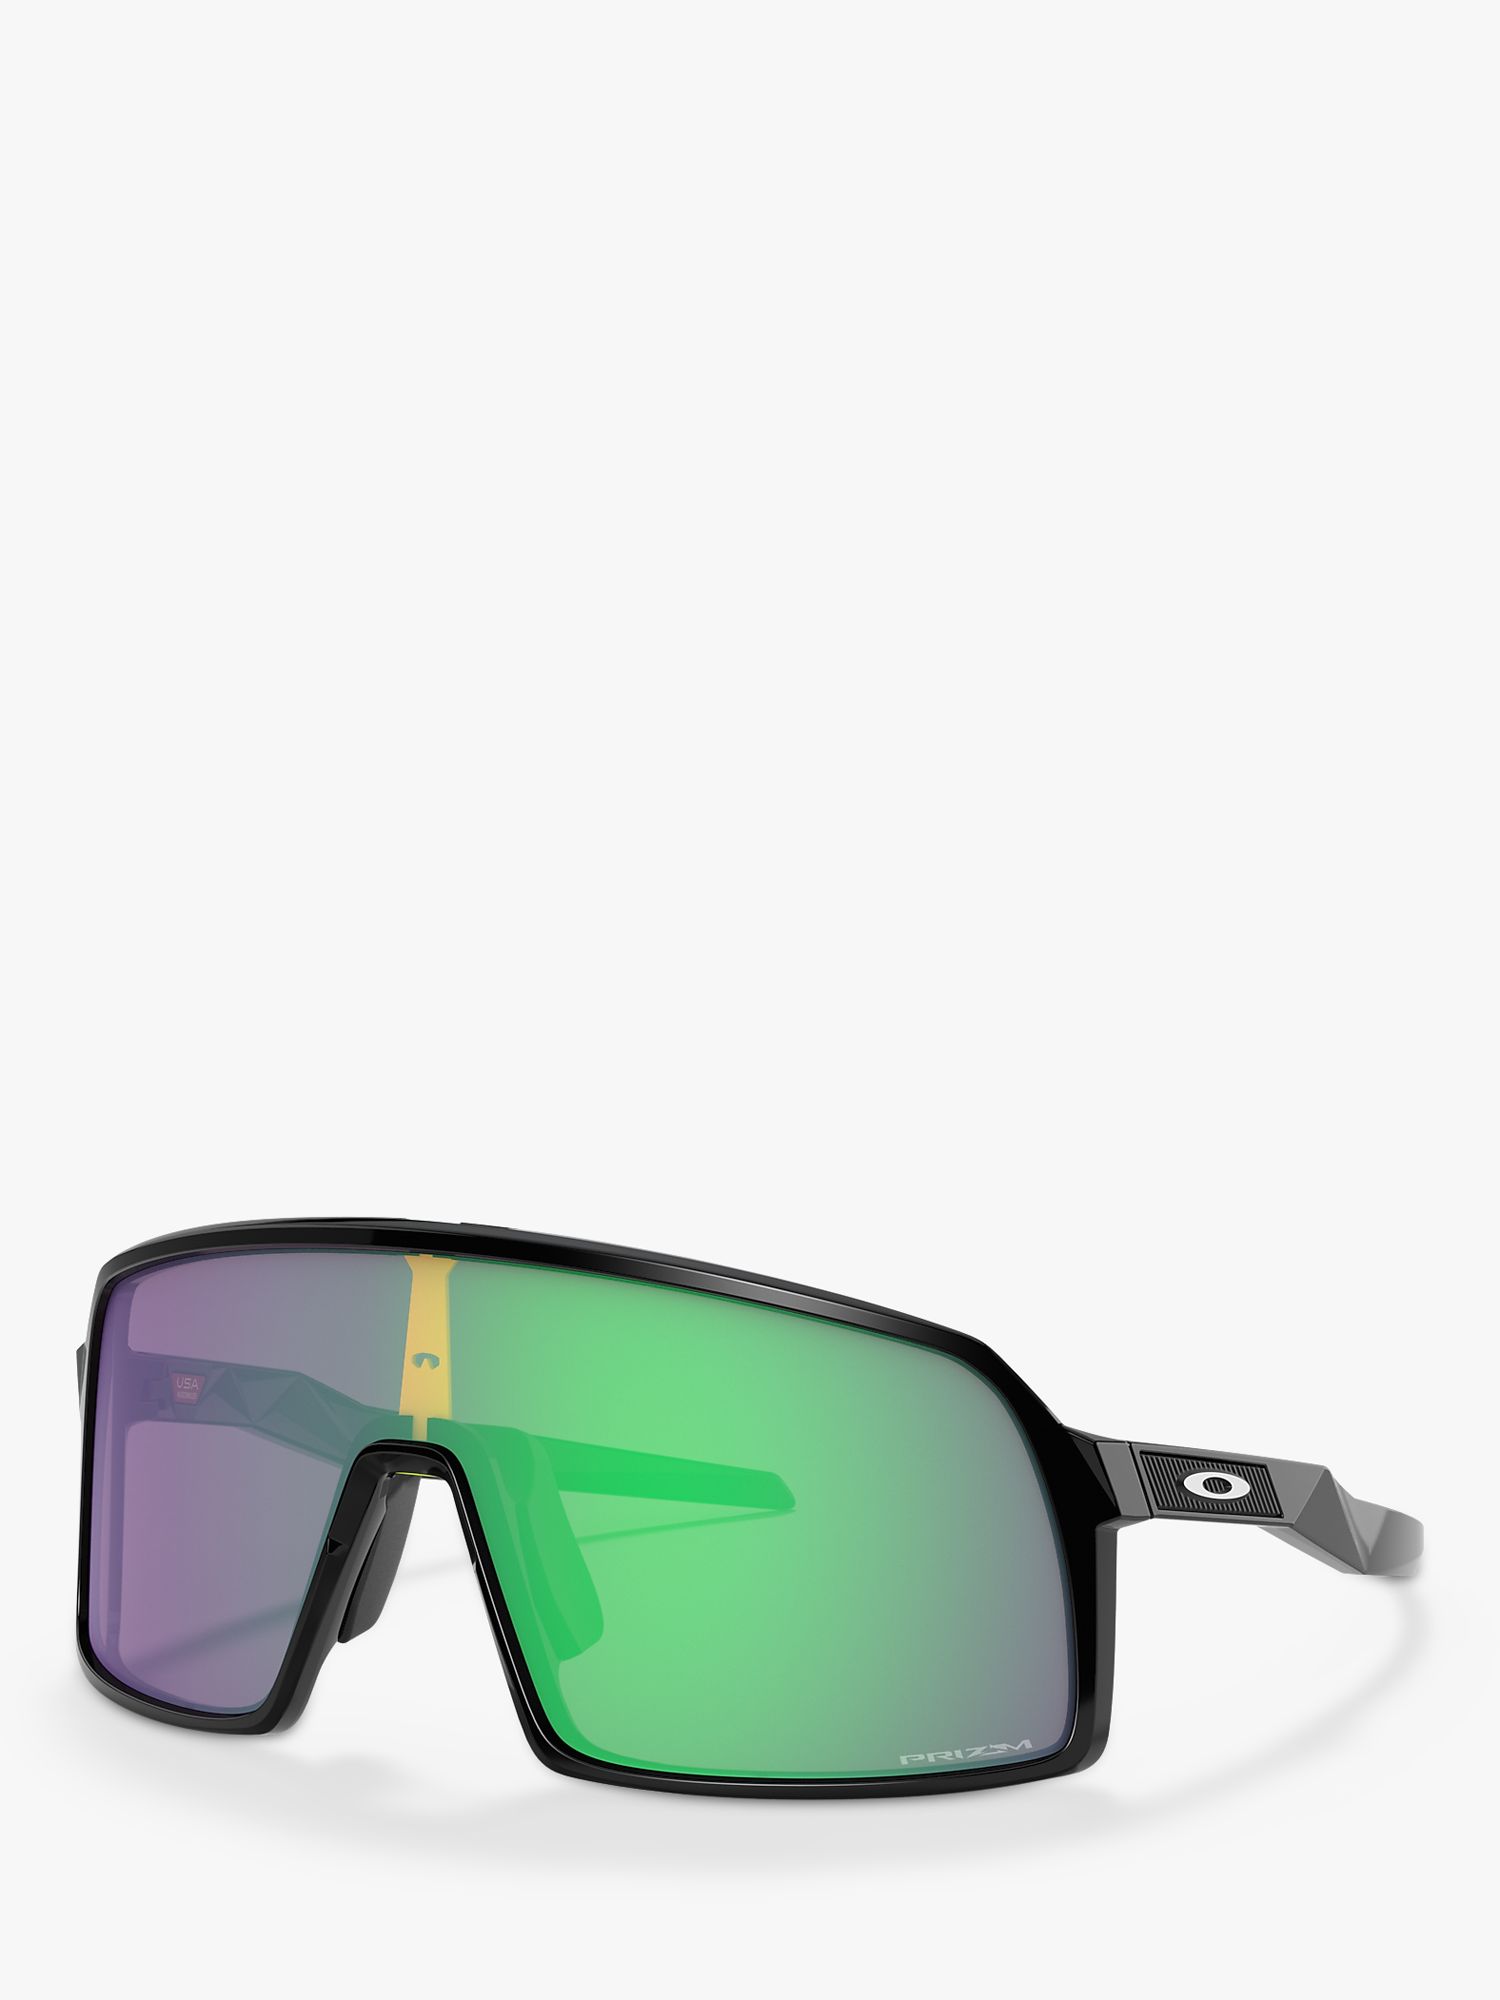 Мужские прямоугольные солнцезащитные очки Oakley OO9462 Sutro, полированный черный/зеленый